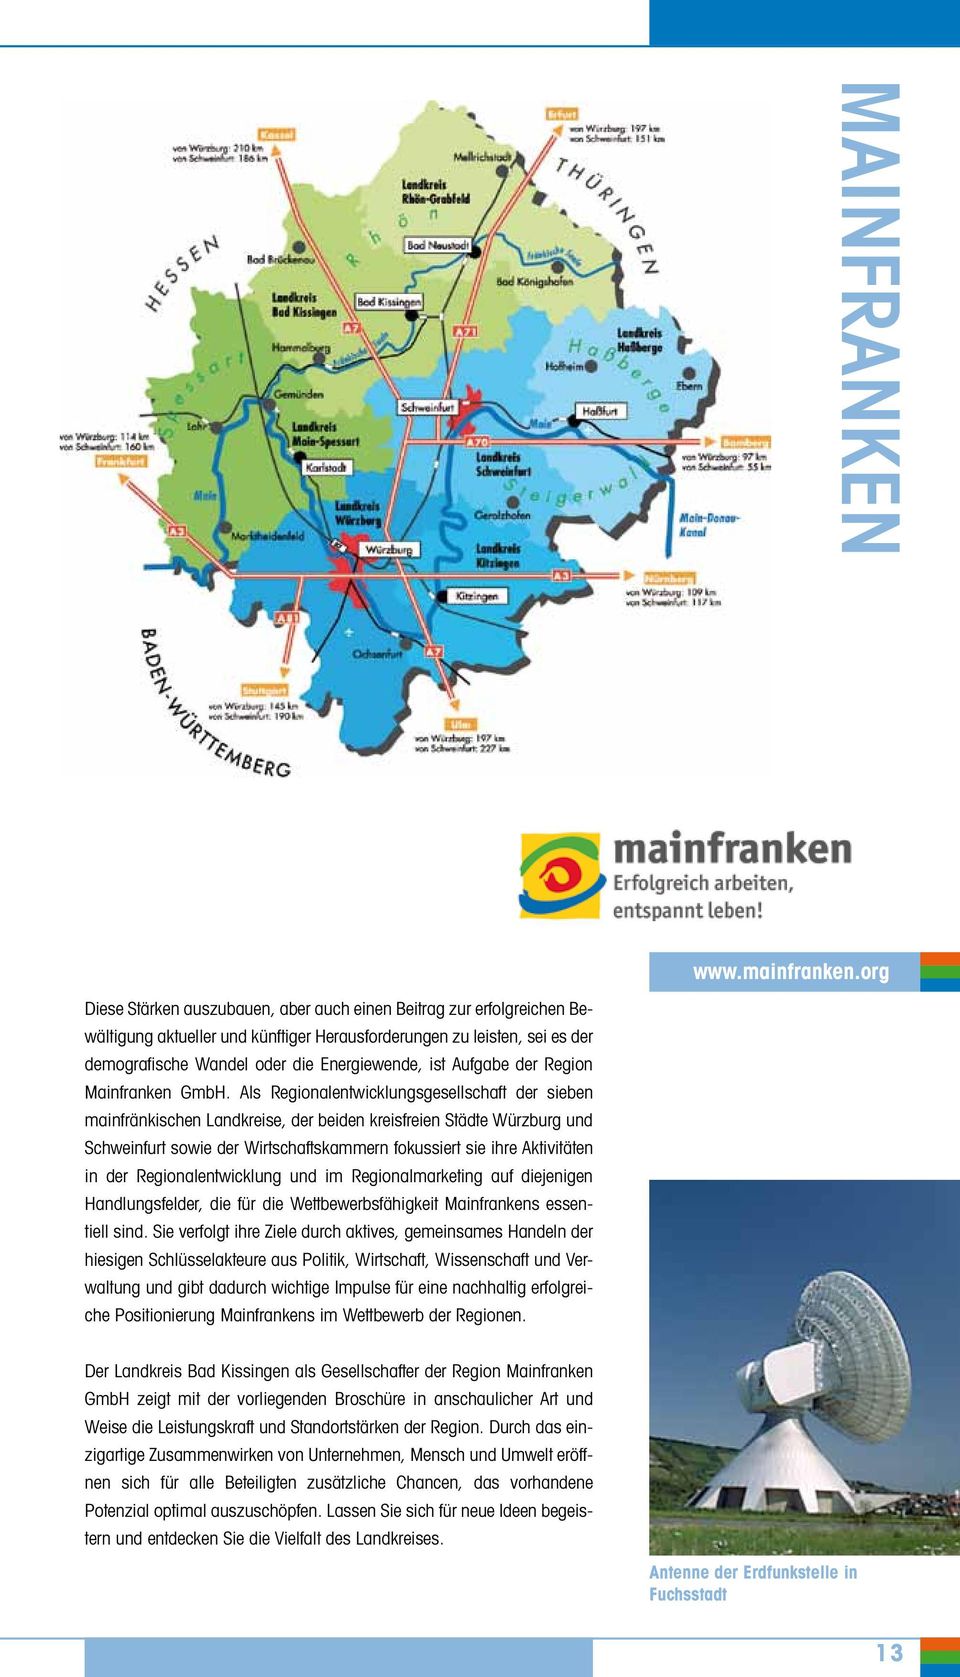 Aufgabe der Region Mainfranken GmbH.